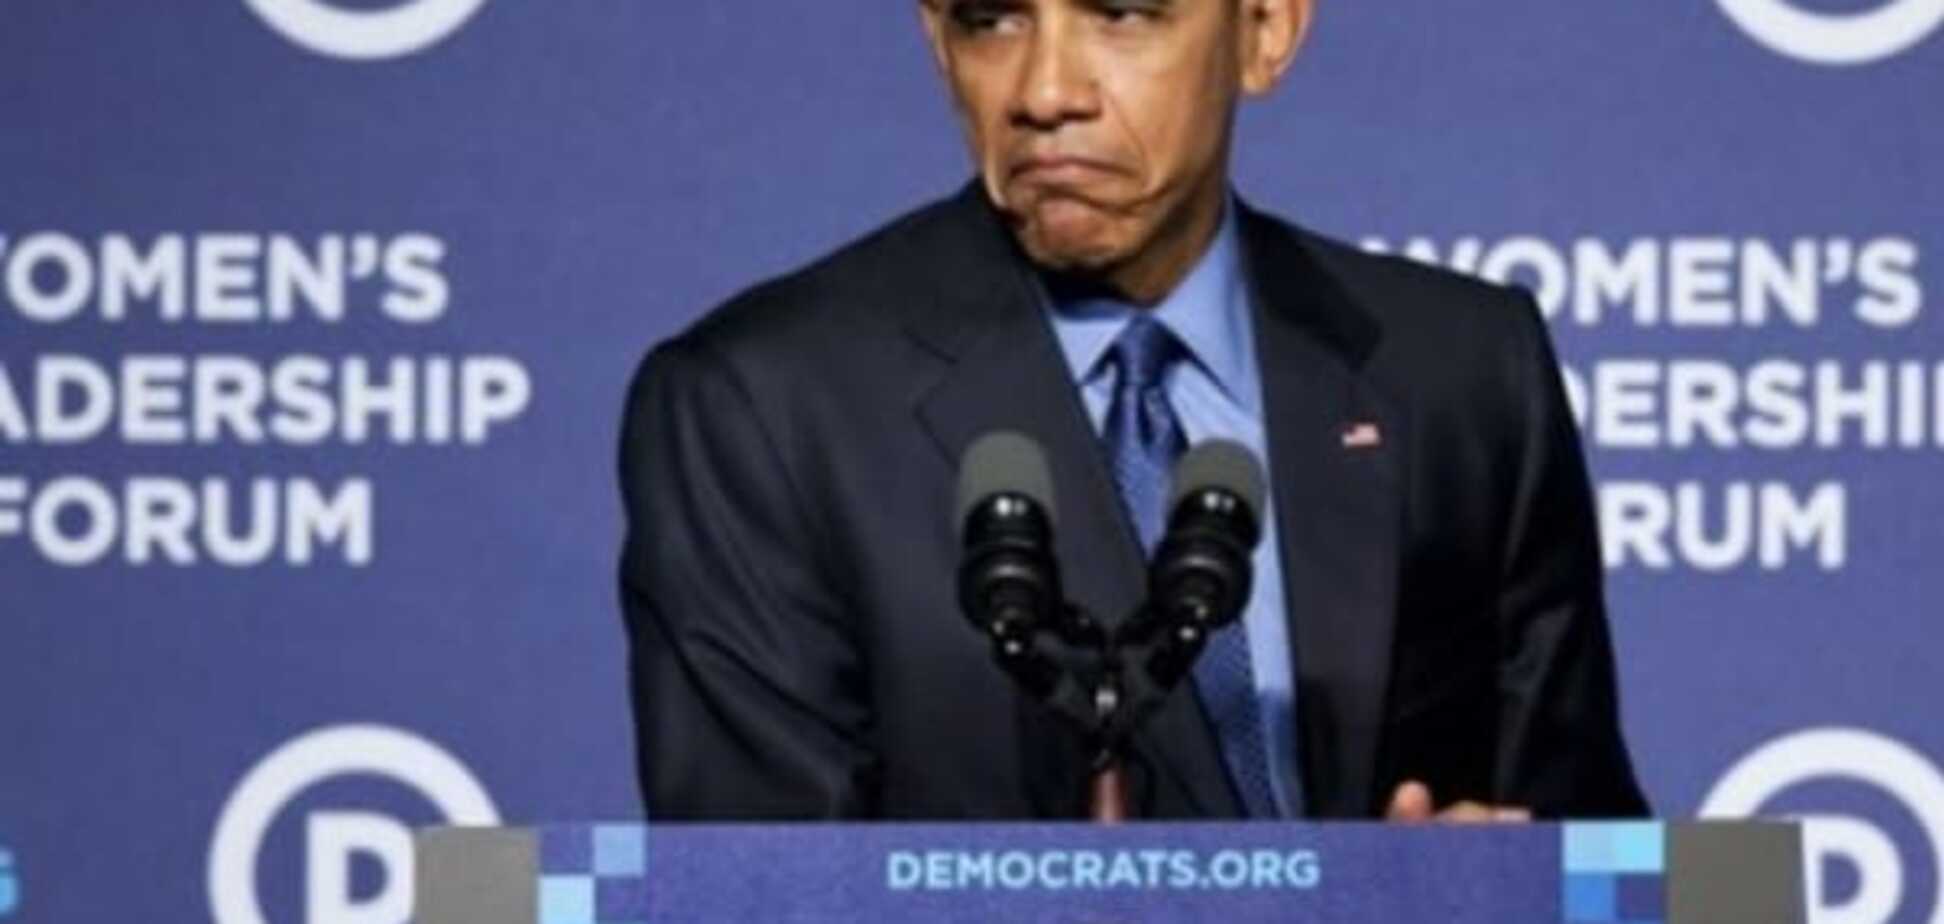 Обама покривлялся на своих оппонентов, изобразив Сердитого котика: опубликованы фото и видео